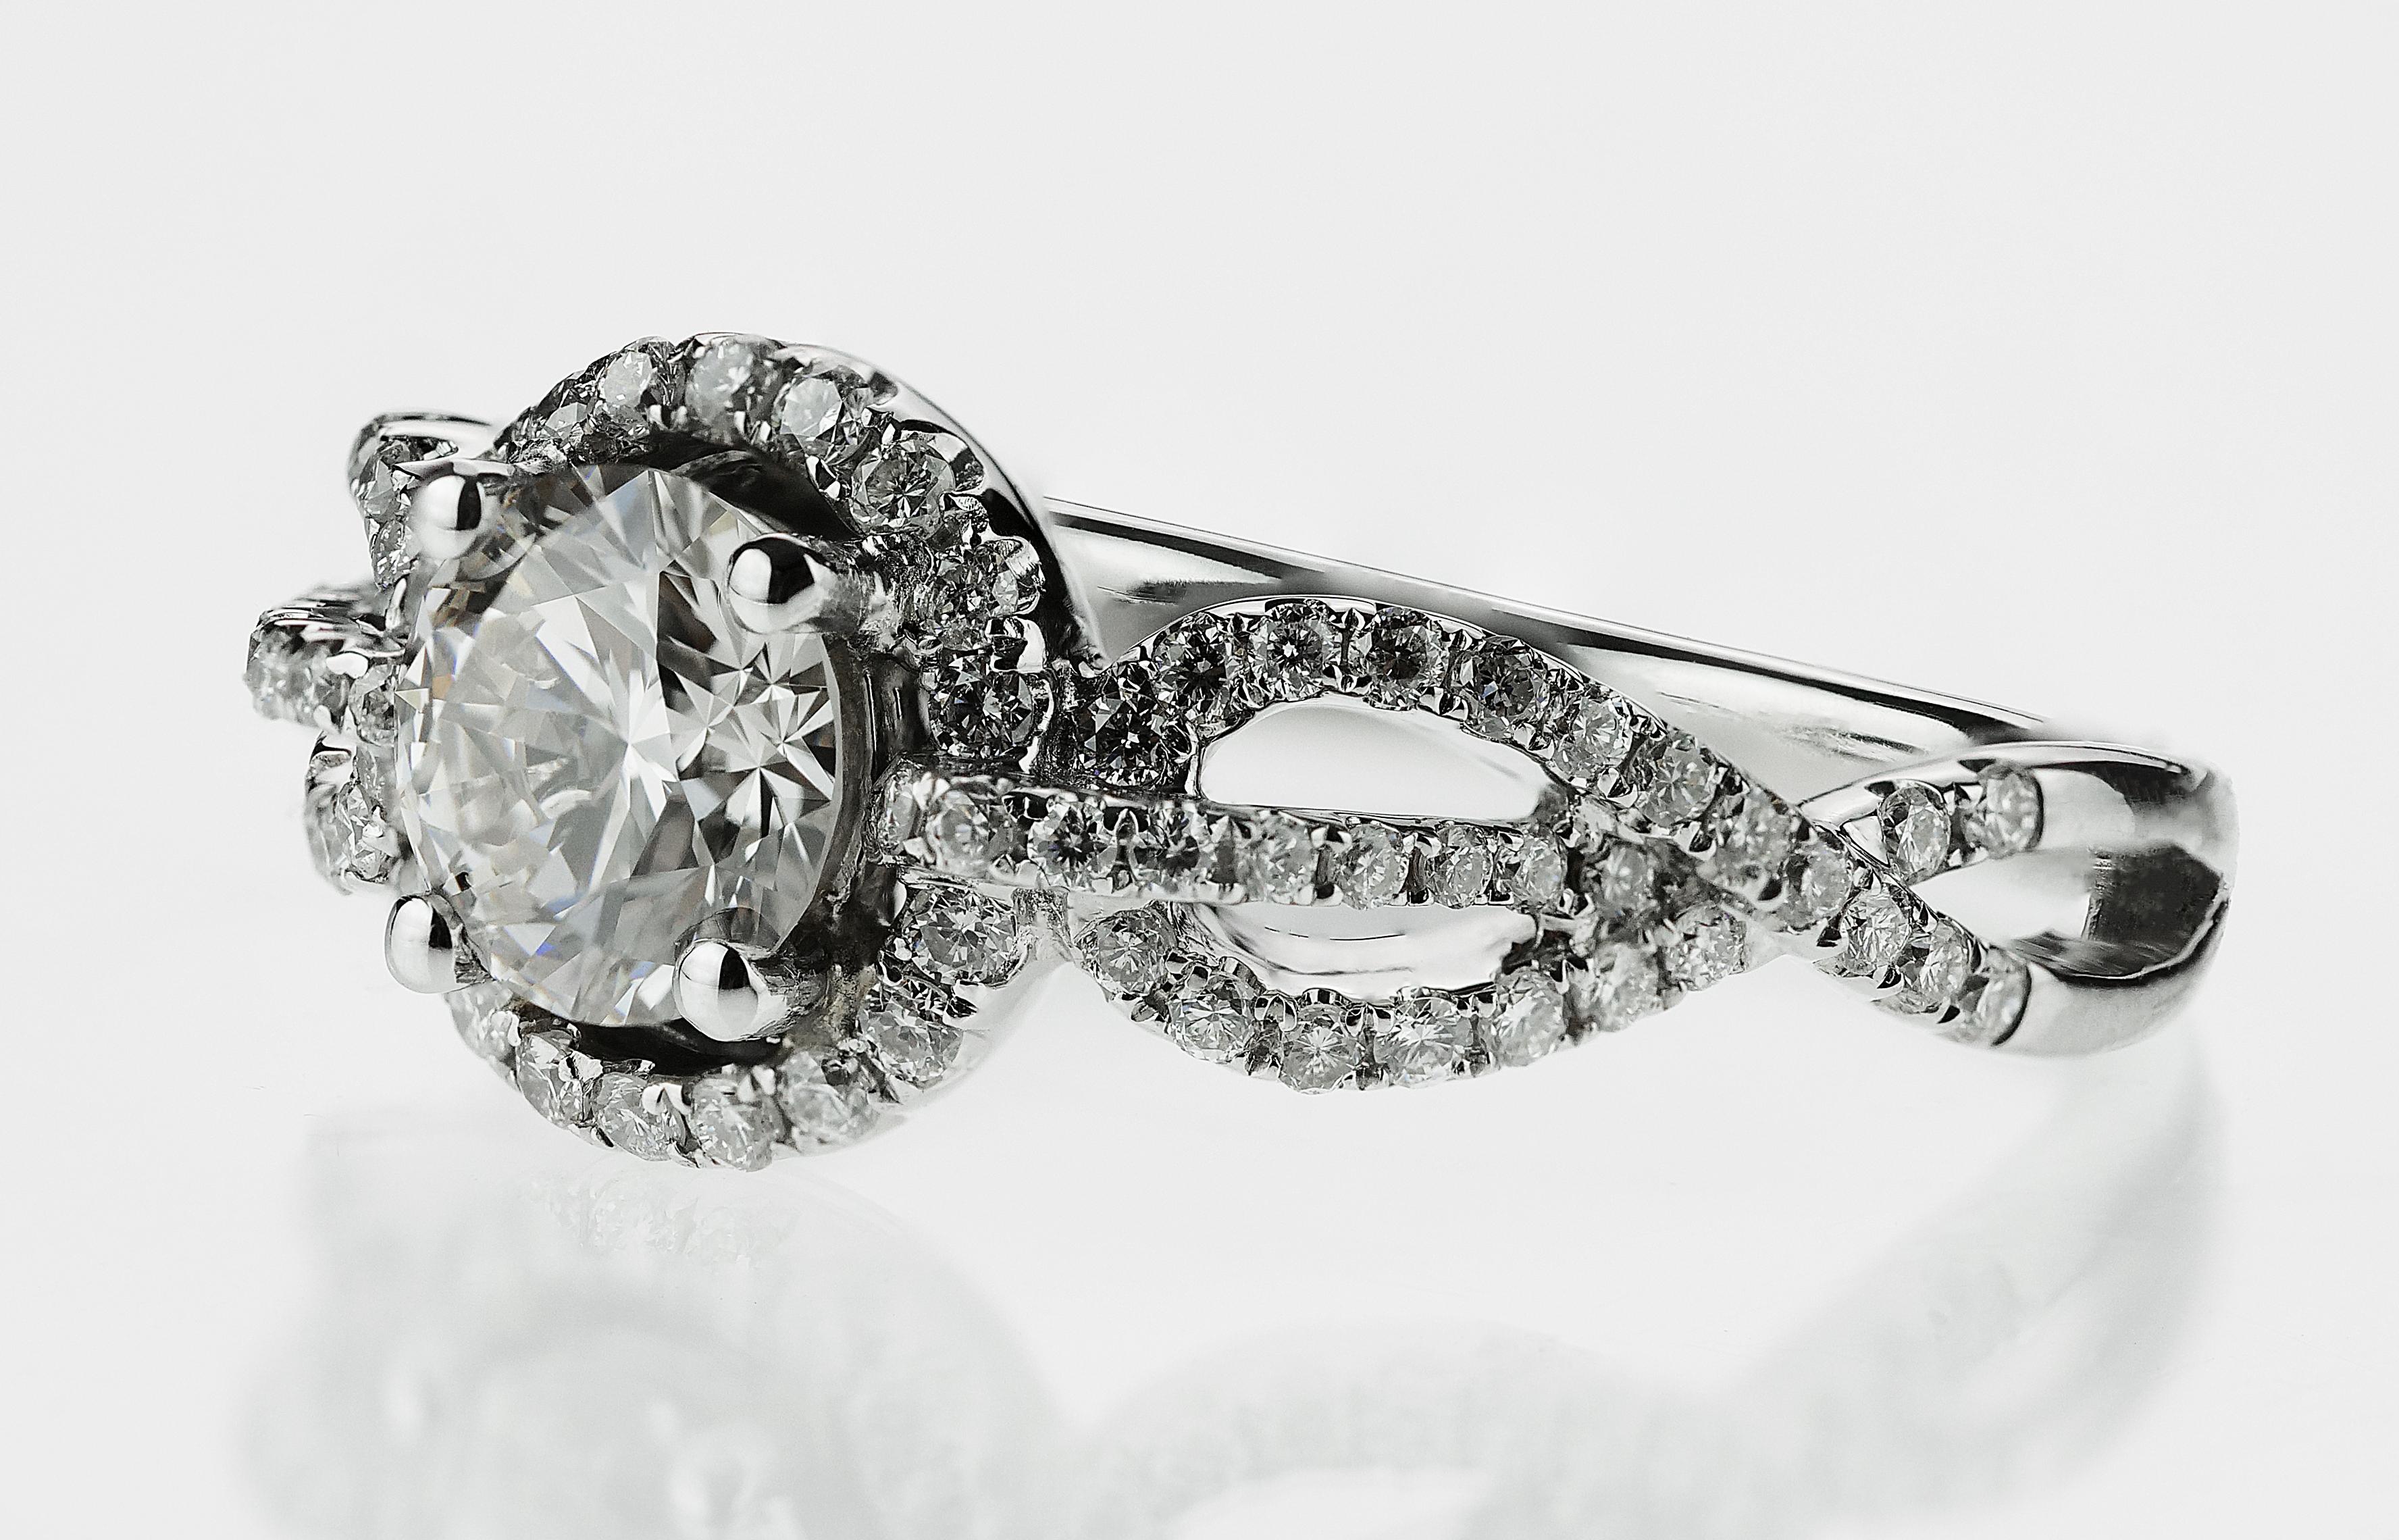 Exquisiter Ring aus 18 Karat Diamant und Weißgold, bestehend aus einem runden Brillanten in der Mitte mit einer erhabenen Diamantbordüre und zwei Schultern mit atemberaubenden Unendlichkeitssymbolen, die zur Hälfte mit Diamanten besetzt sind und